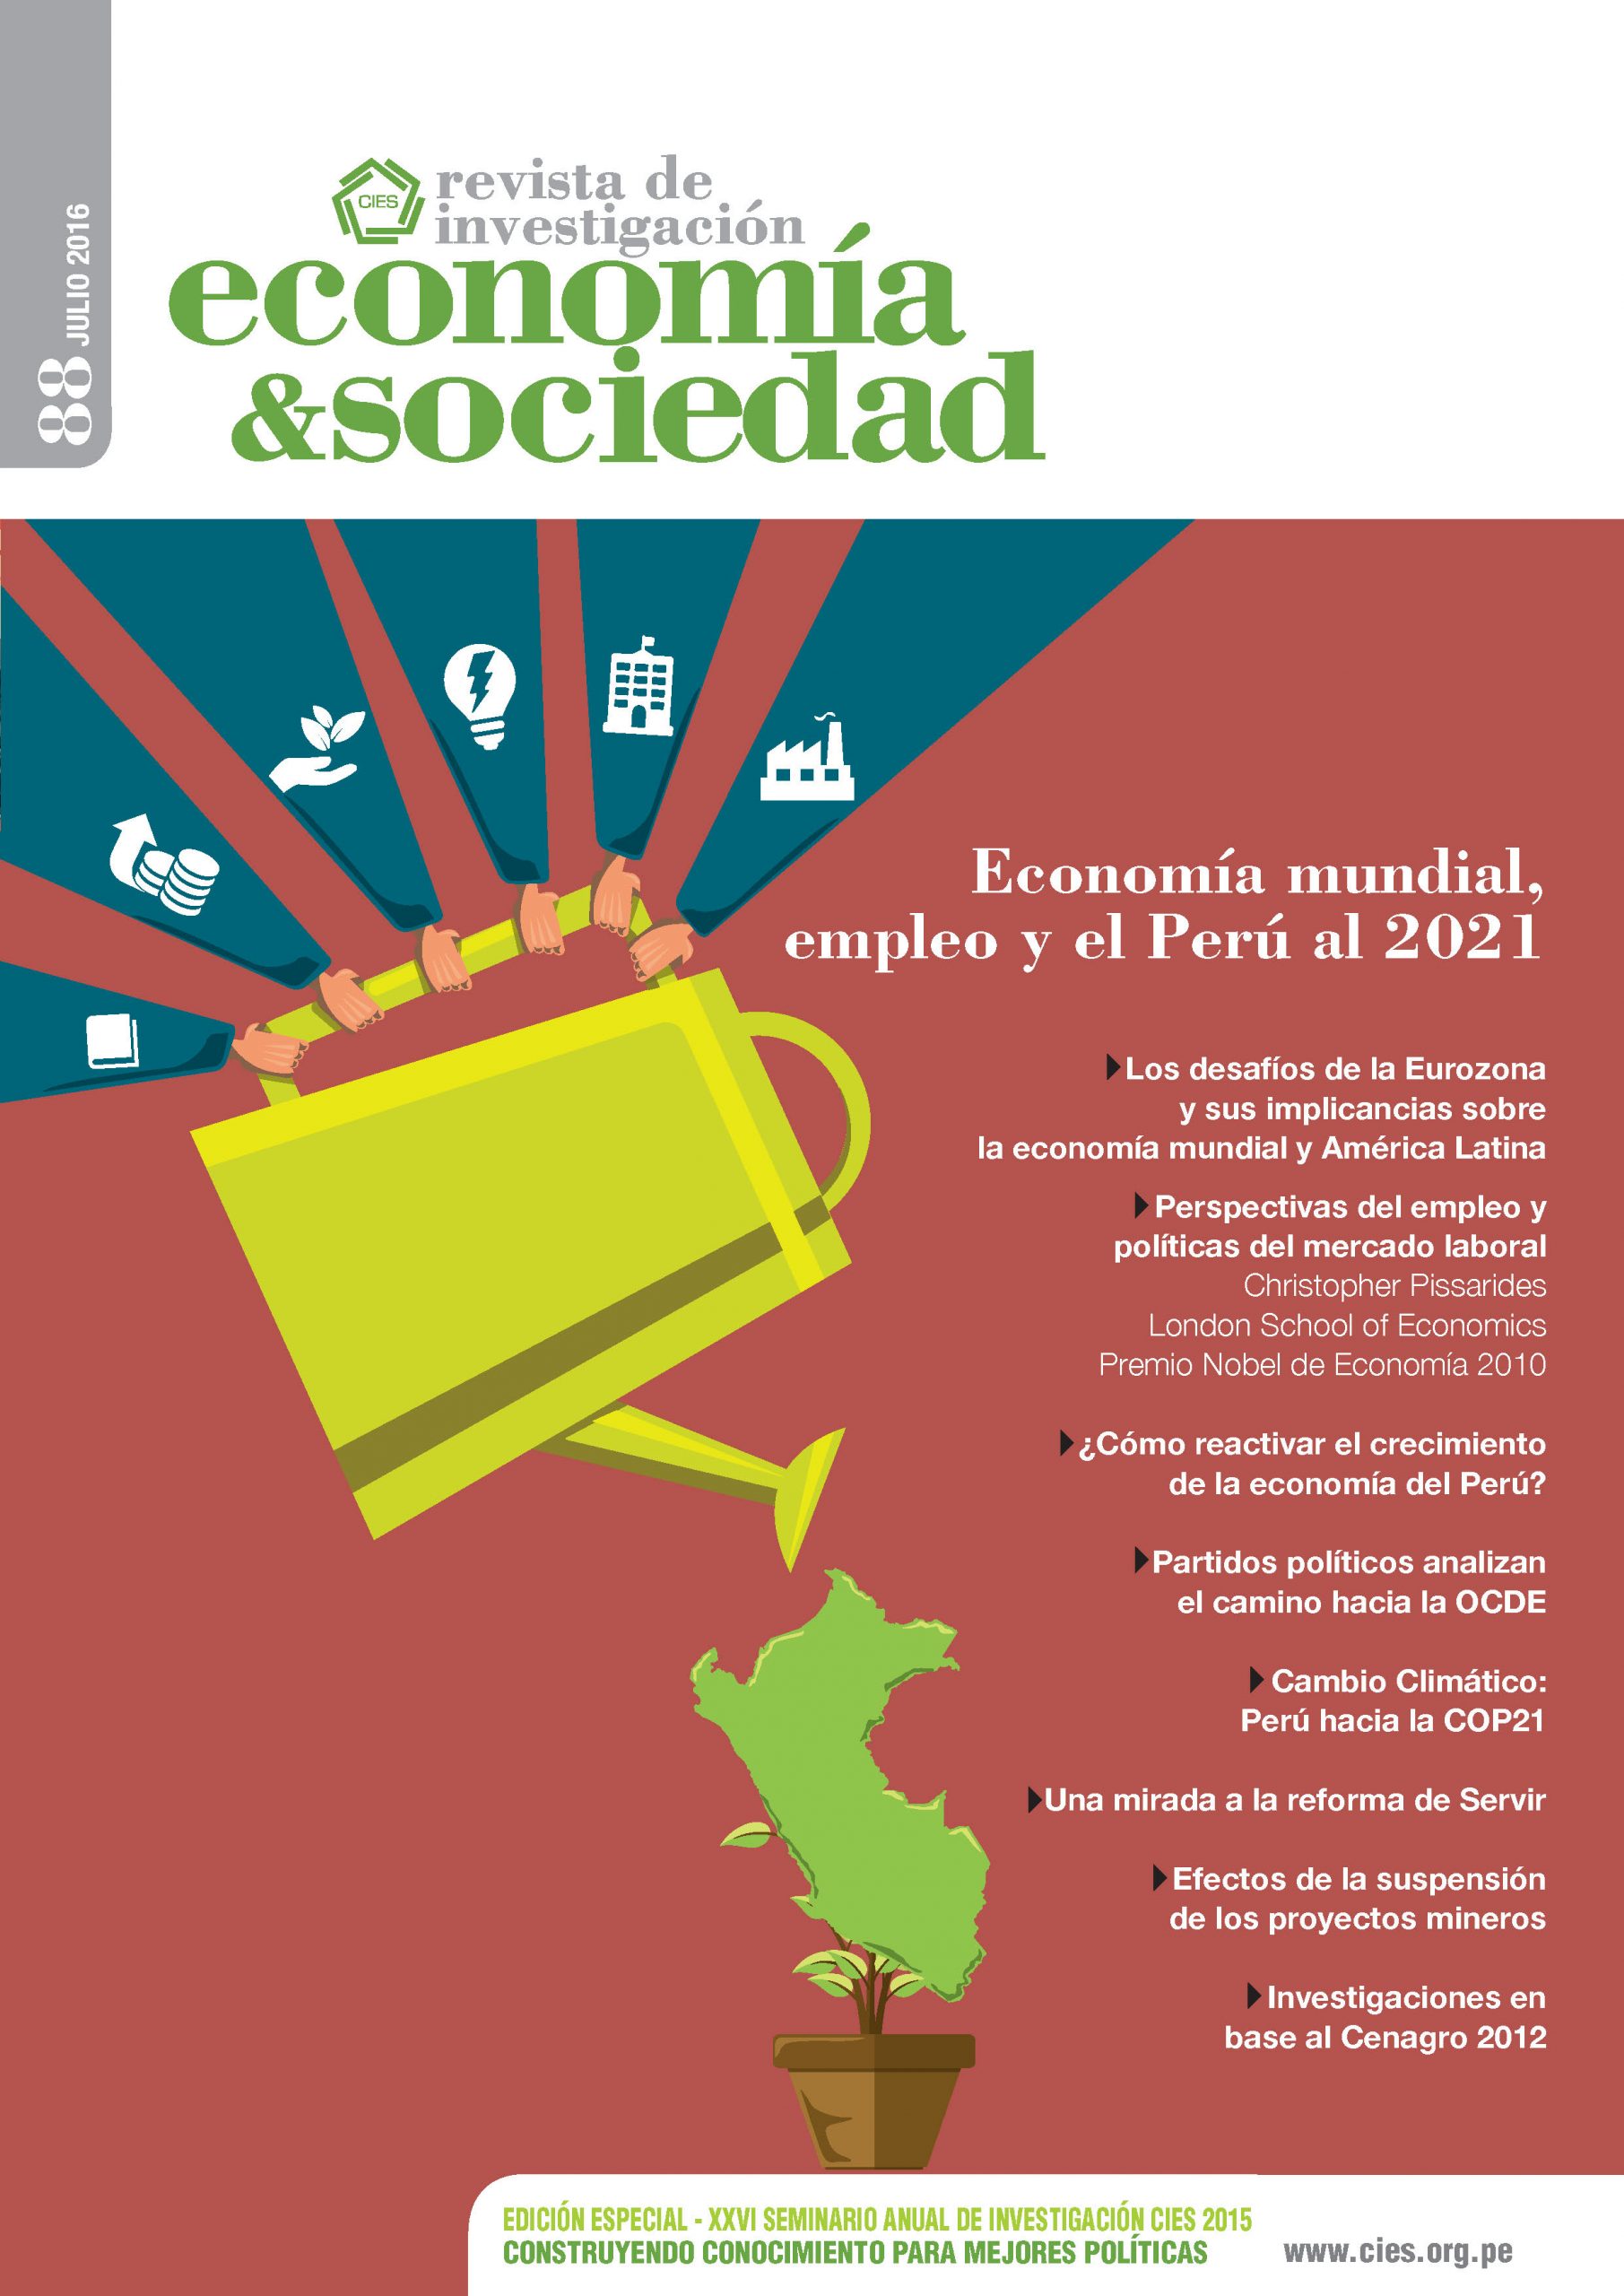 economía&sociedad: Economía mundial, empleo, el Perú al 2021. XXVI Seminario Anual de Investigación CIES 2015